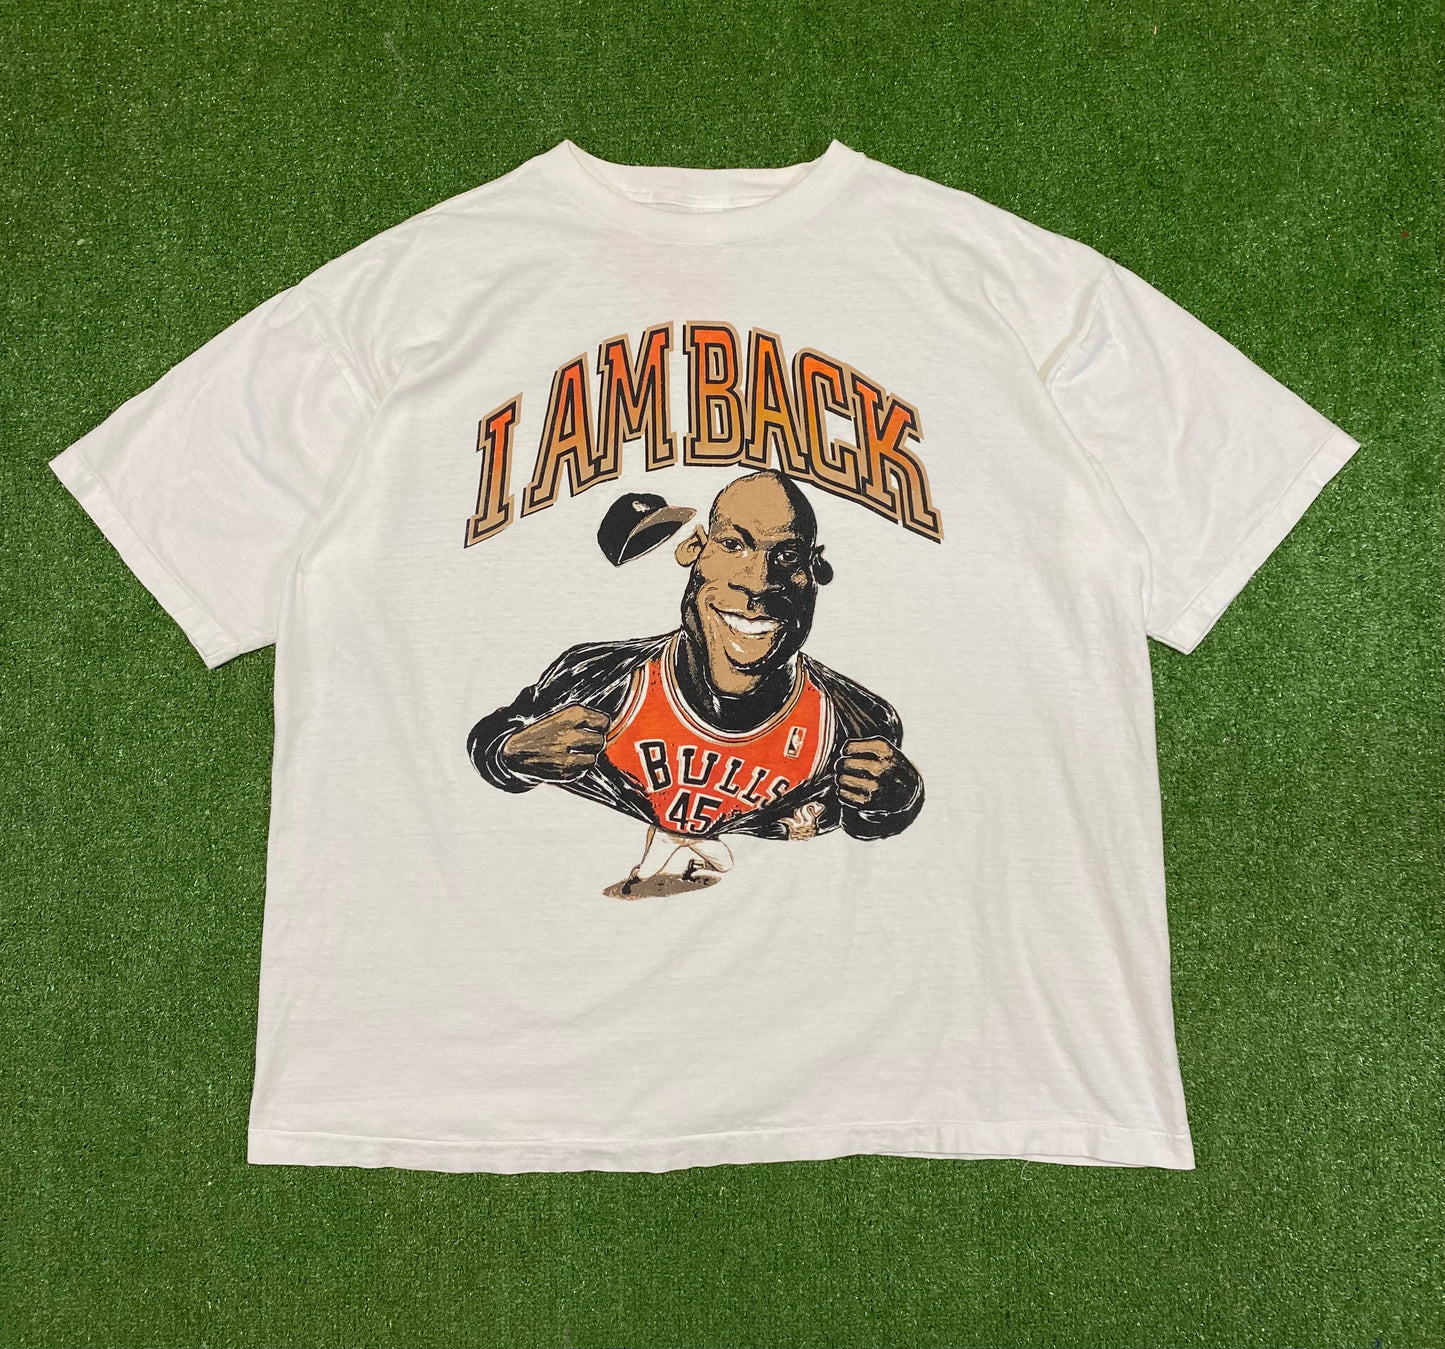 1995 Michael Jordan “I Am Back” Bulls T-Shirt XL